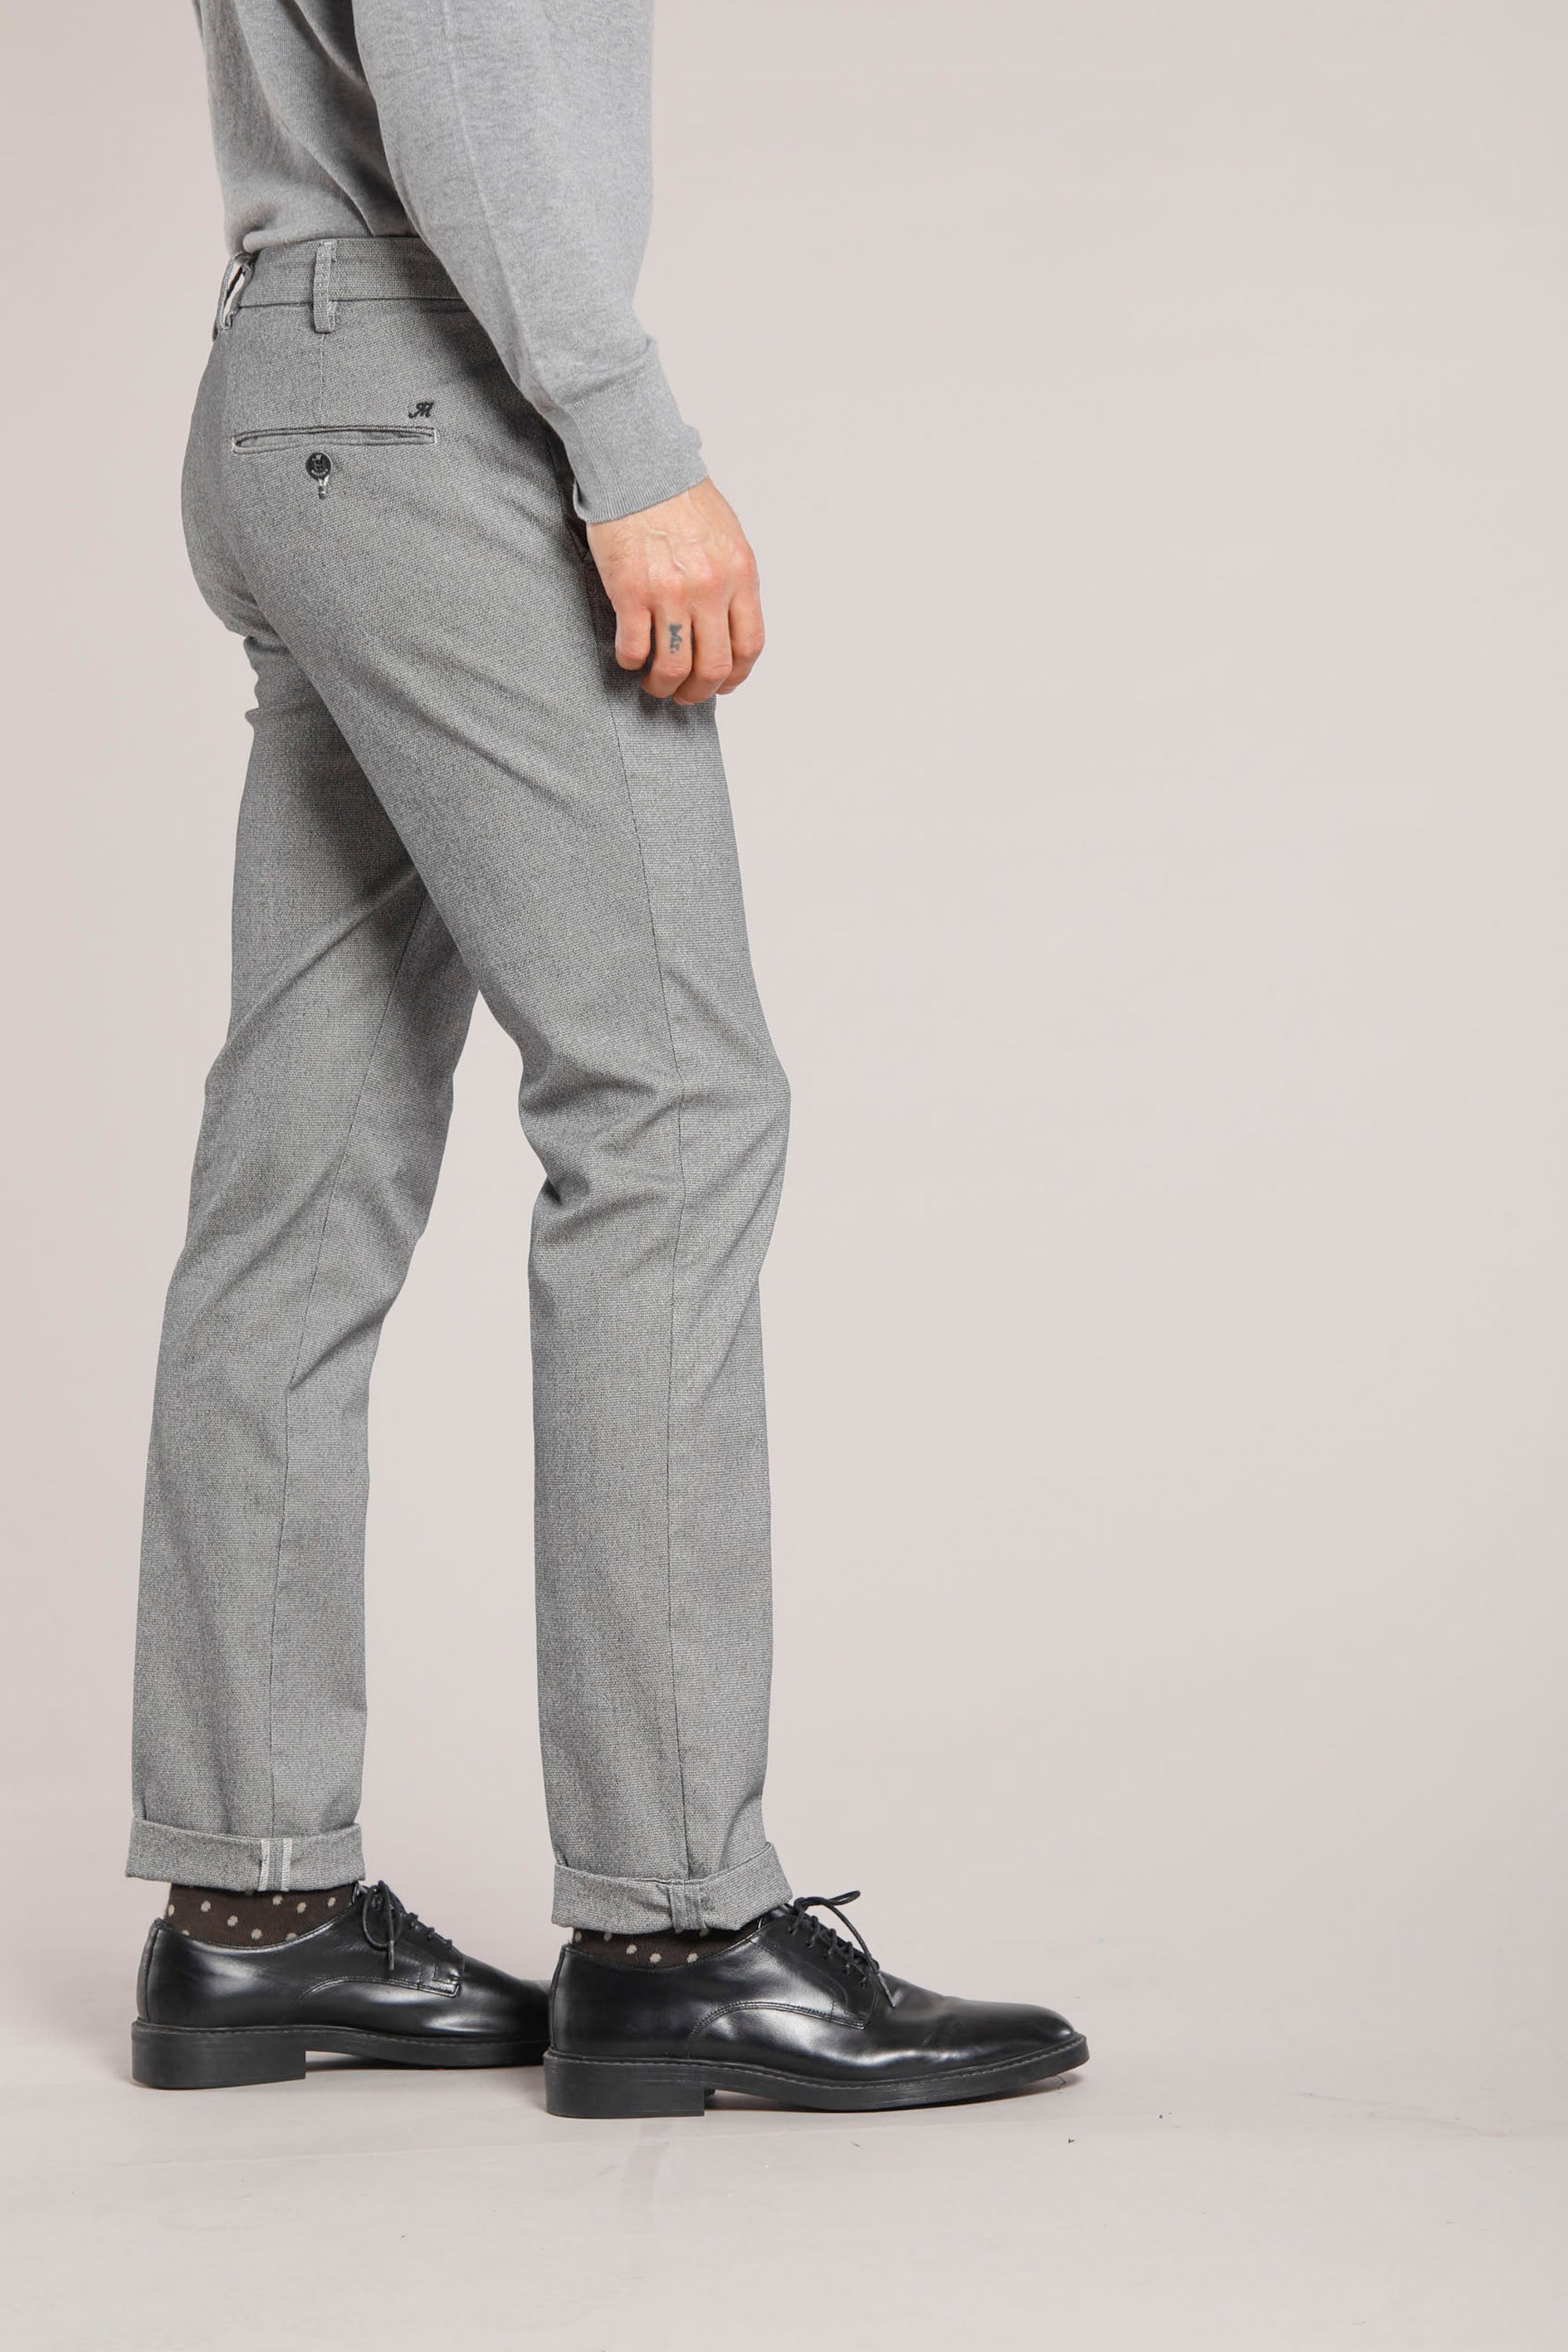 Torino Prestige pantalon chino homme en coton modal à micro motif coupe slim